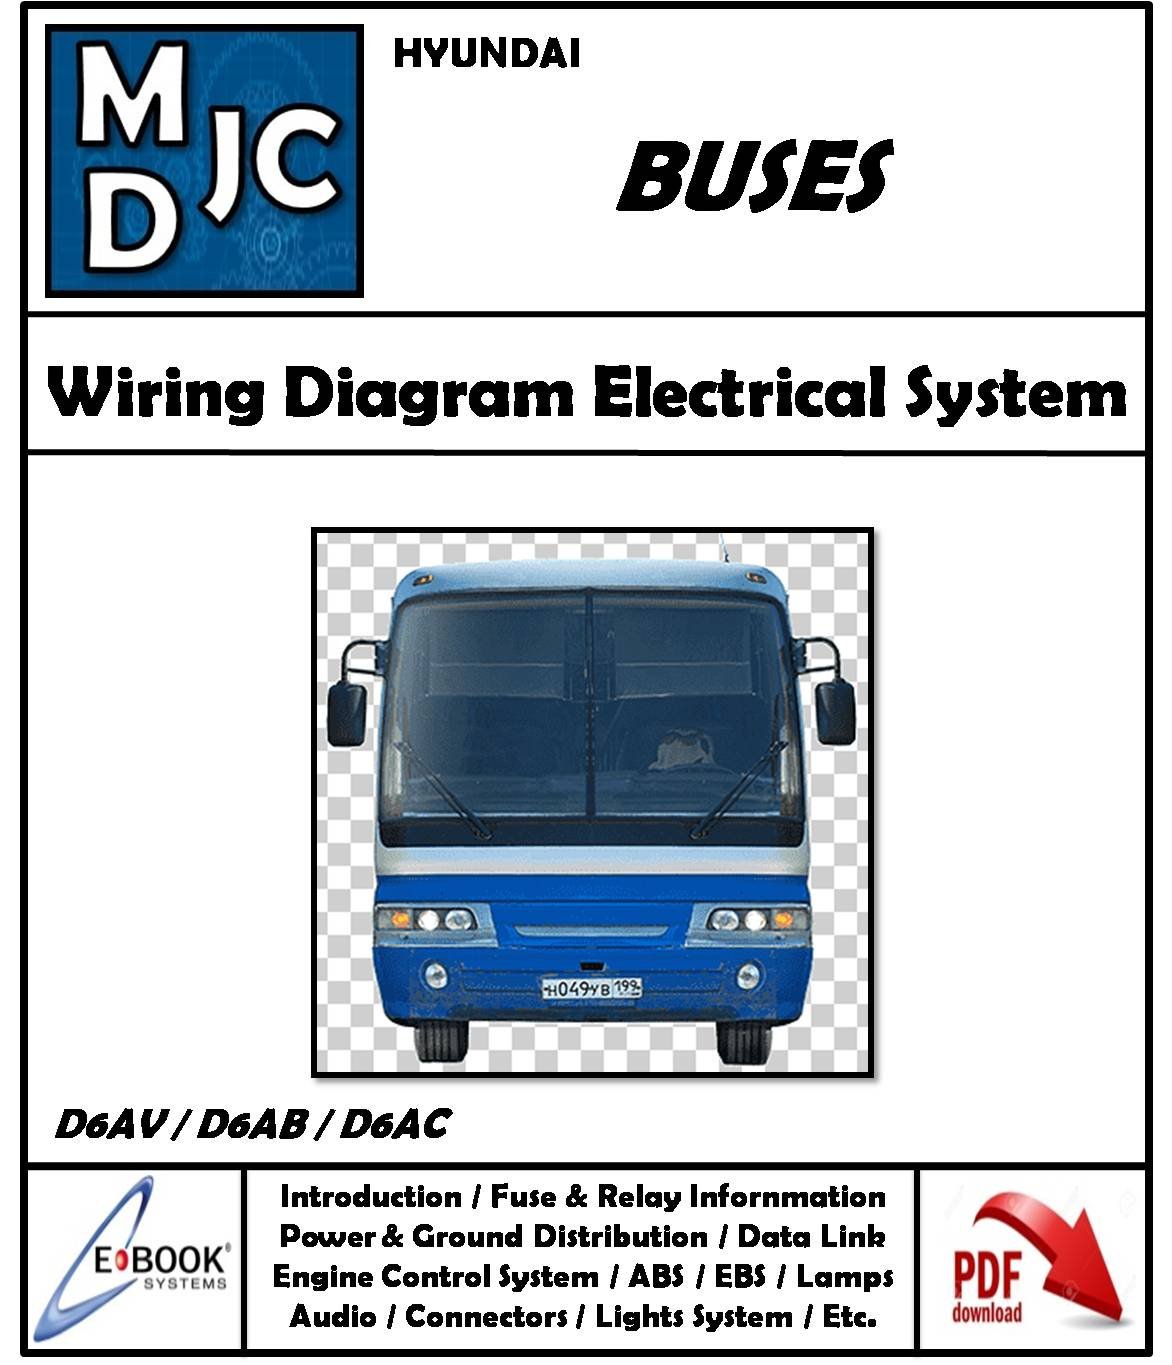 Hyundai Bus - D6AV / D6AB / D6AC